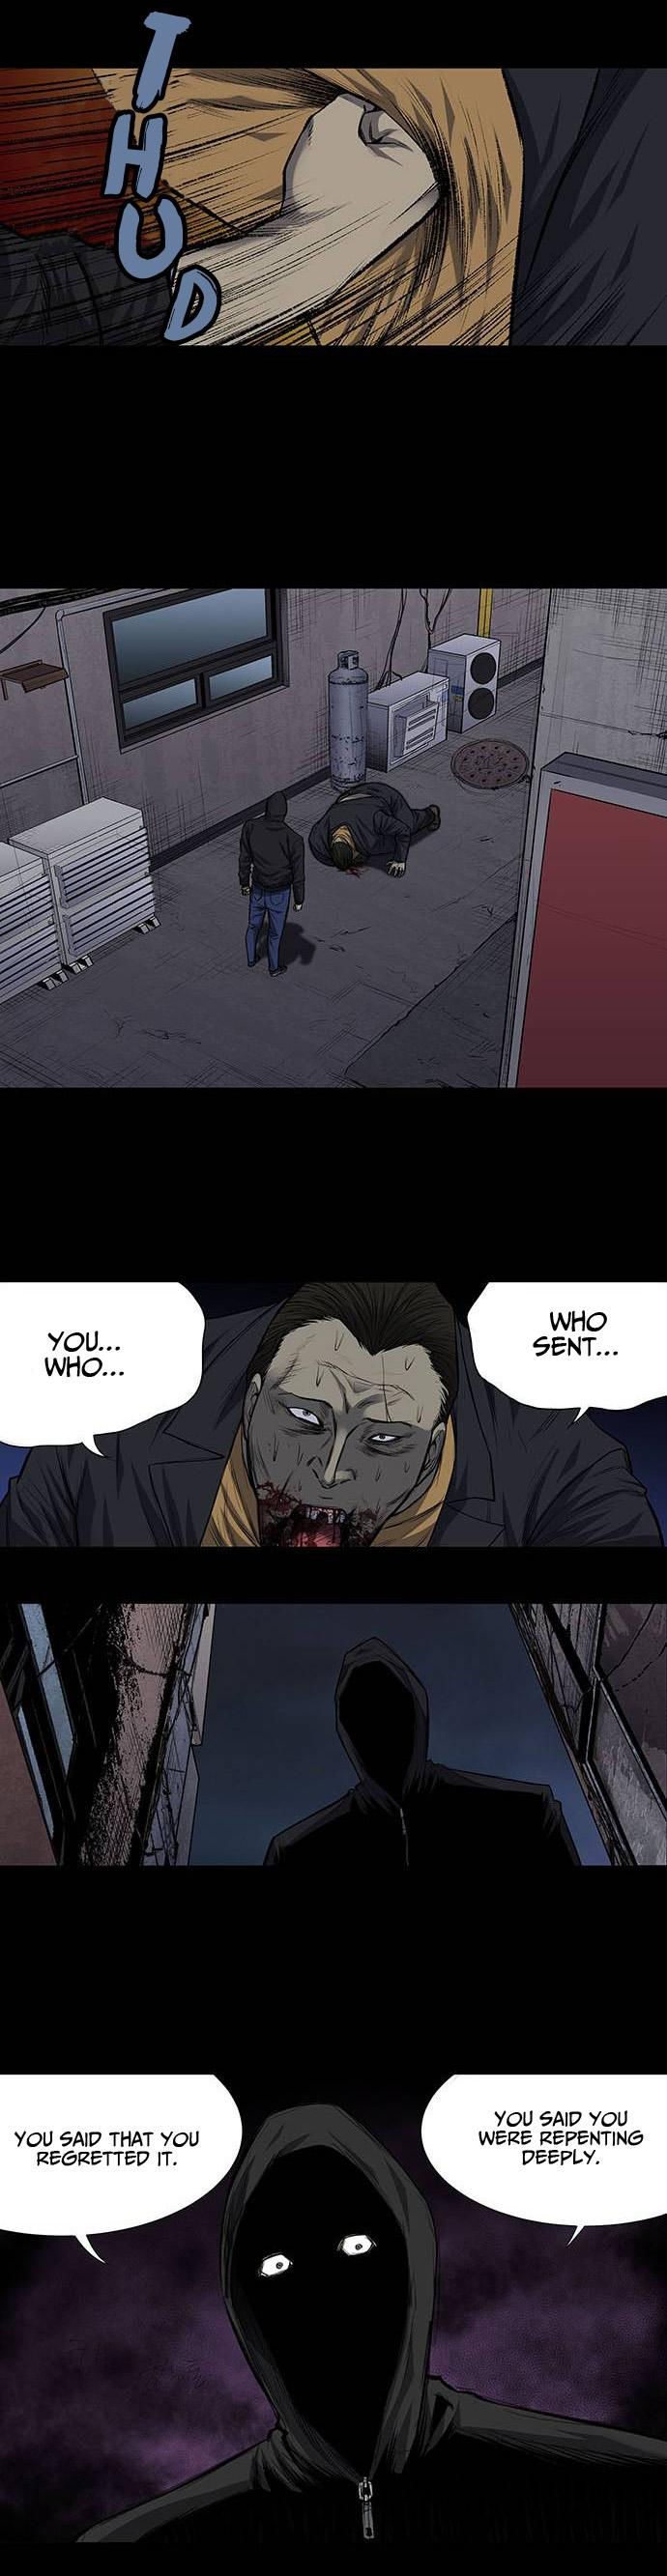 Vigilante - Chapter 1 Page 11